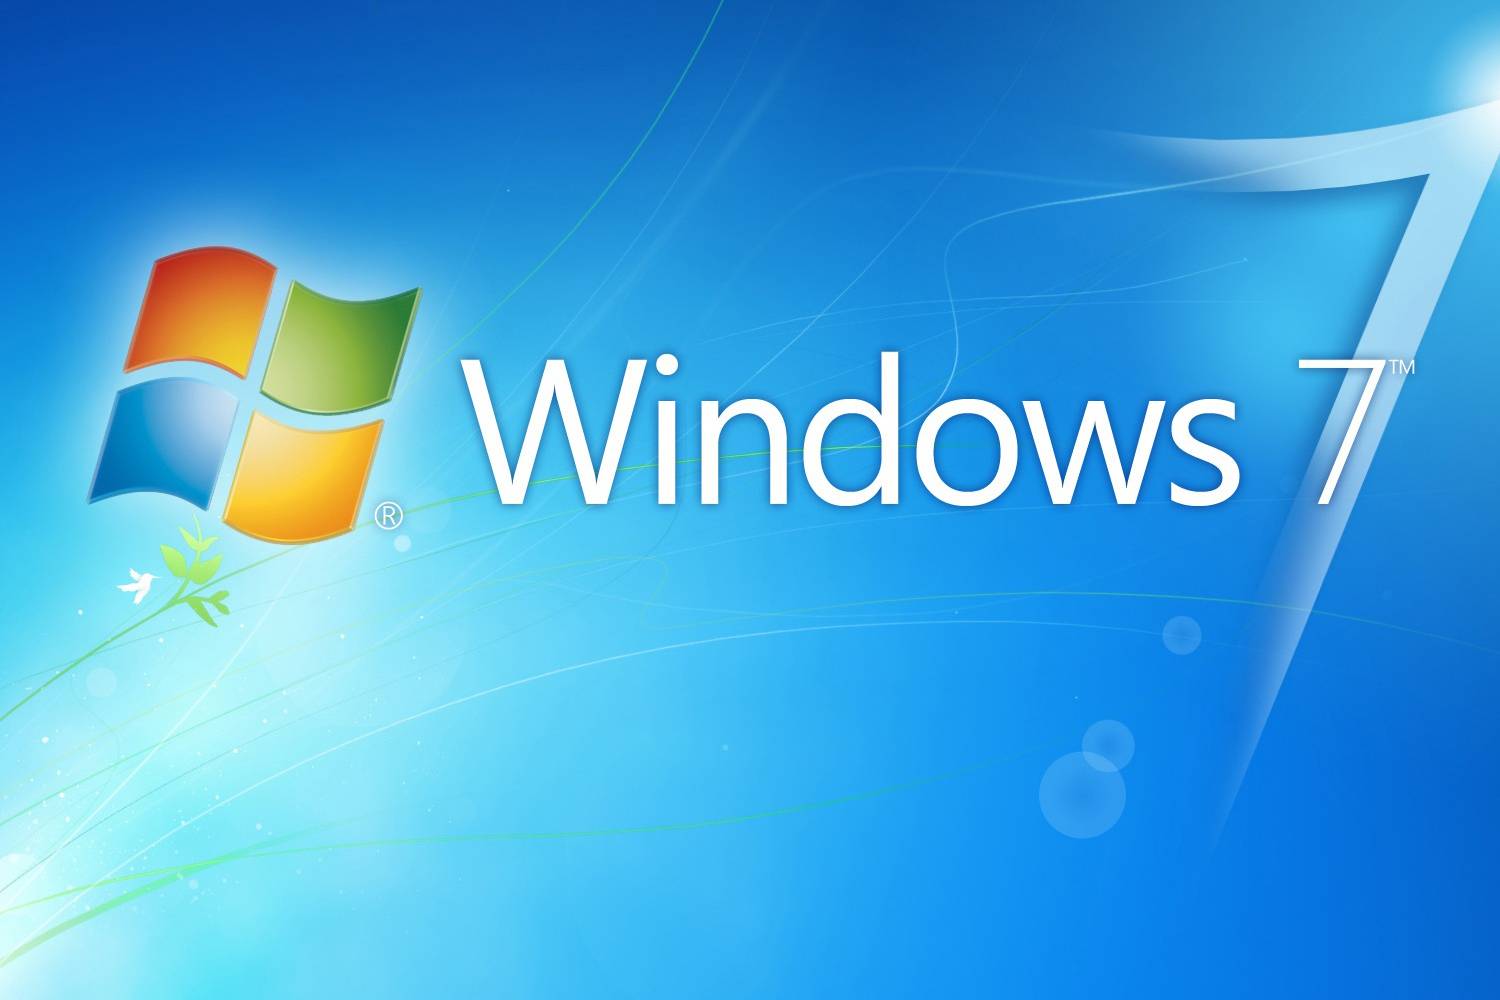 Windows 7 і 8 перестануть отримувати критичні оновлення безпеки вже наступного тижня